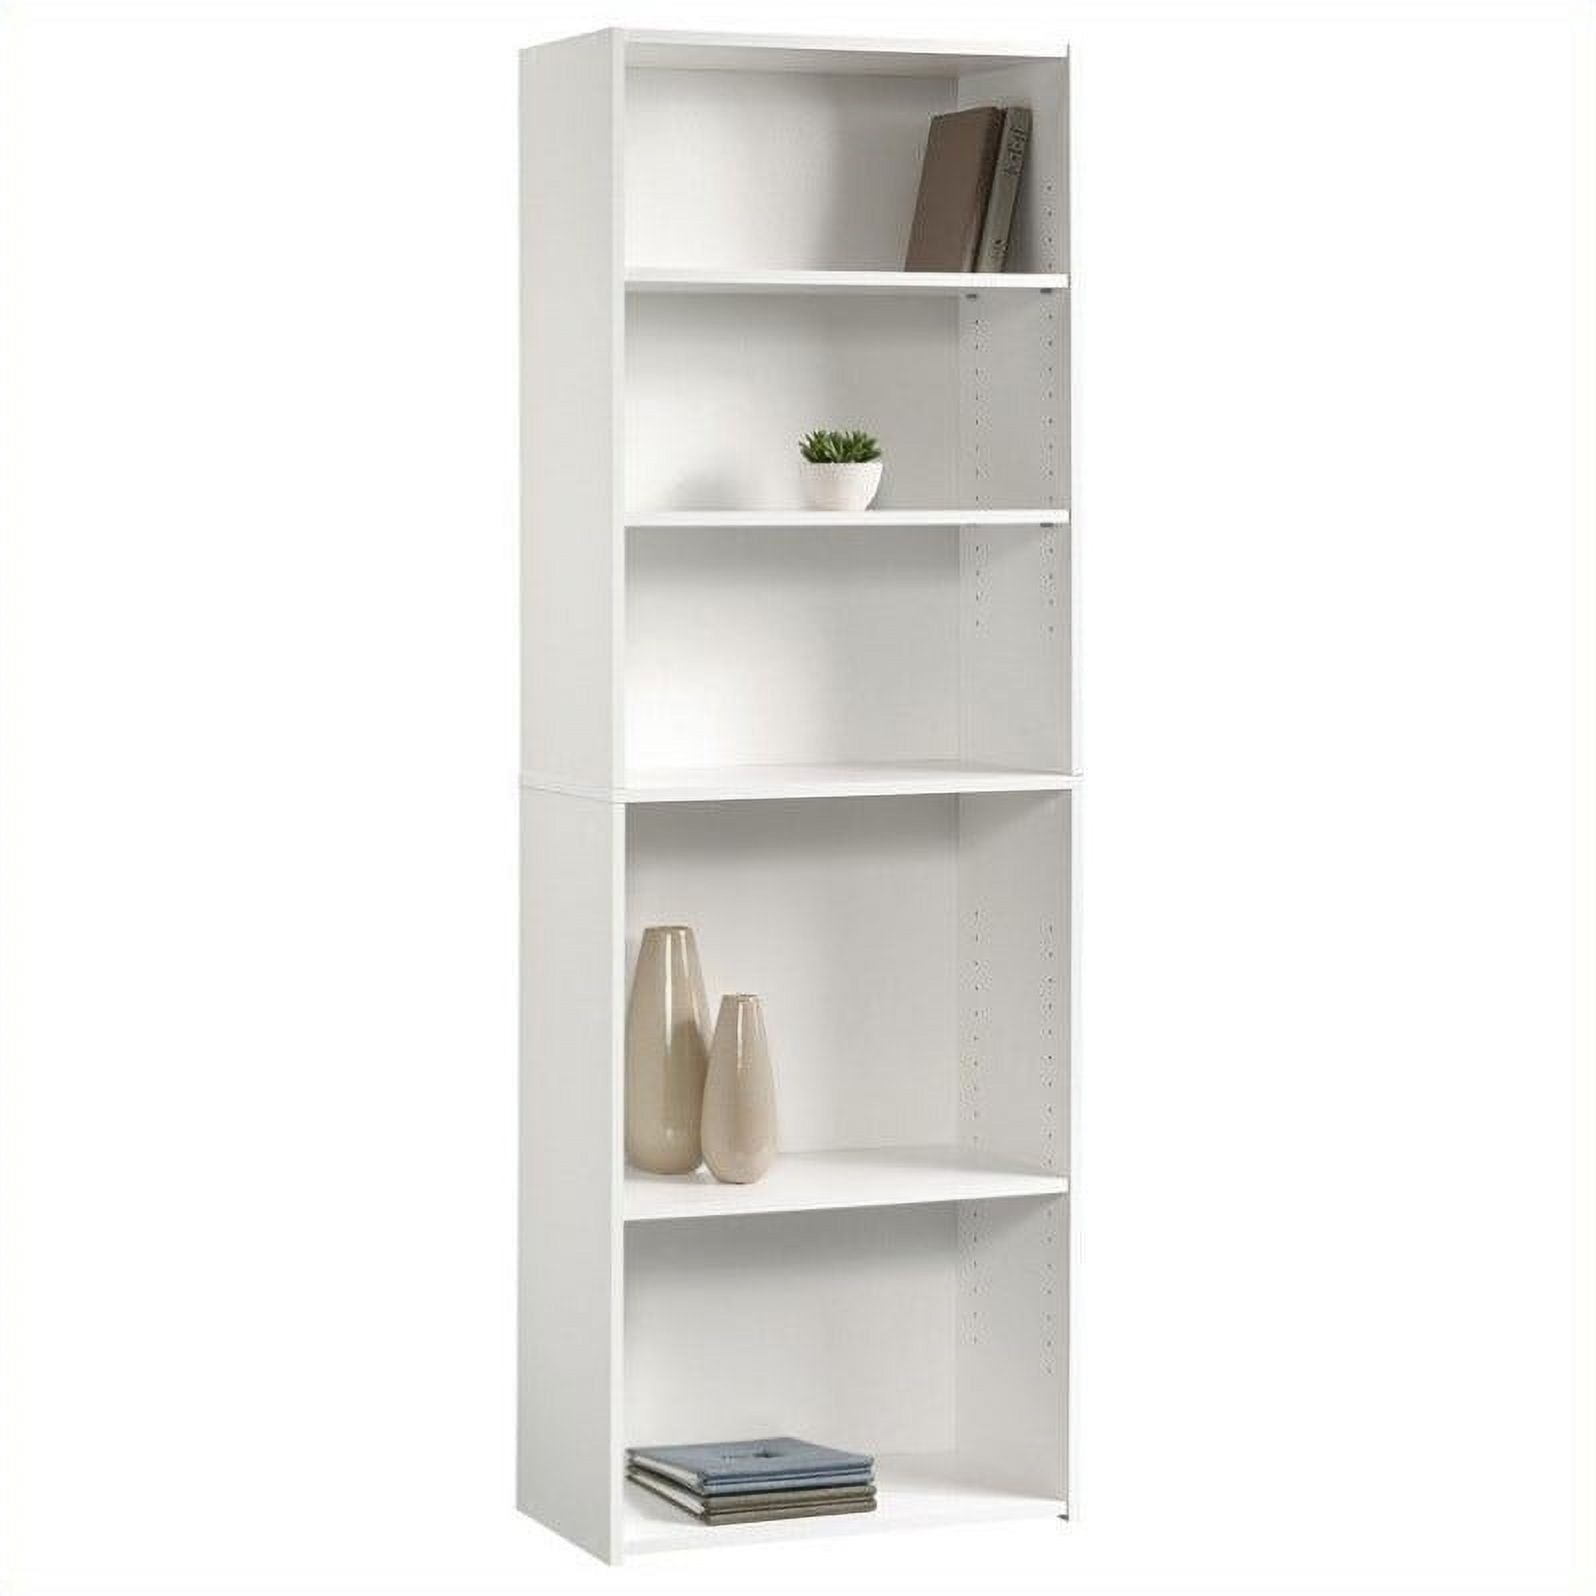 Sauder Beginnings 5 -Shelf Bookcase, Soft White Finish - image 2 of 9